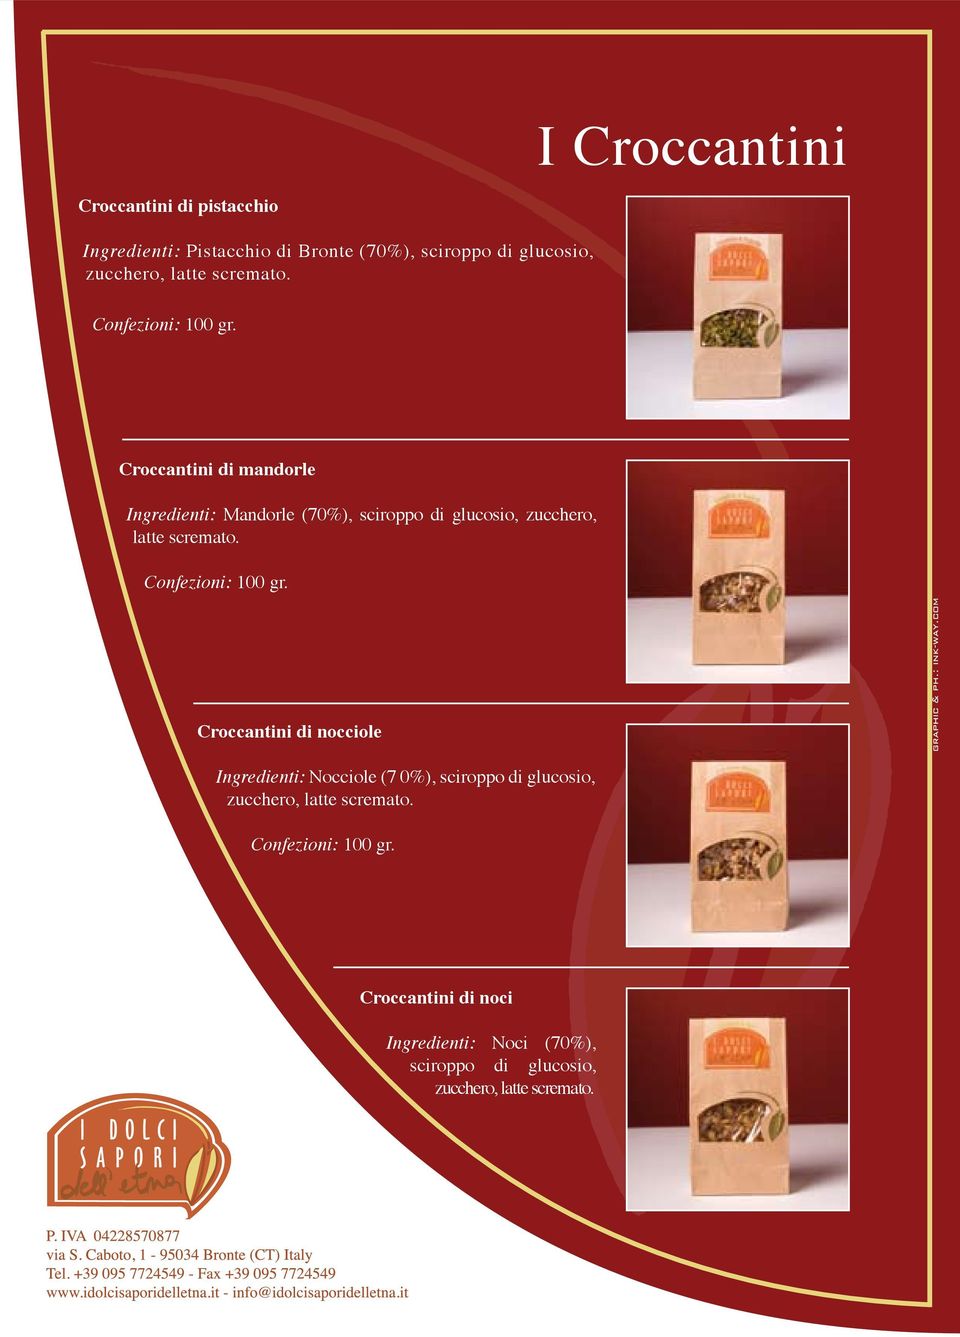 Croccantini di mandorle Ingredienti: Mandorle (70%), sciroppo di glucosio, zucchero, latte  Croccantini di nocciole